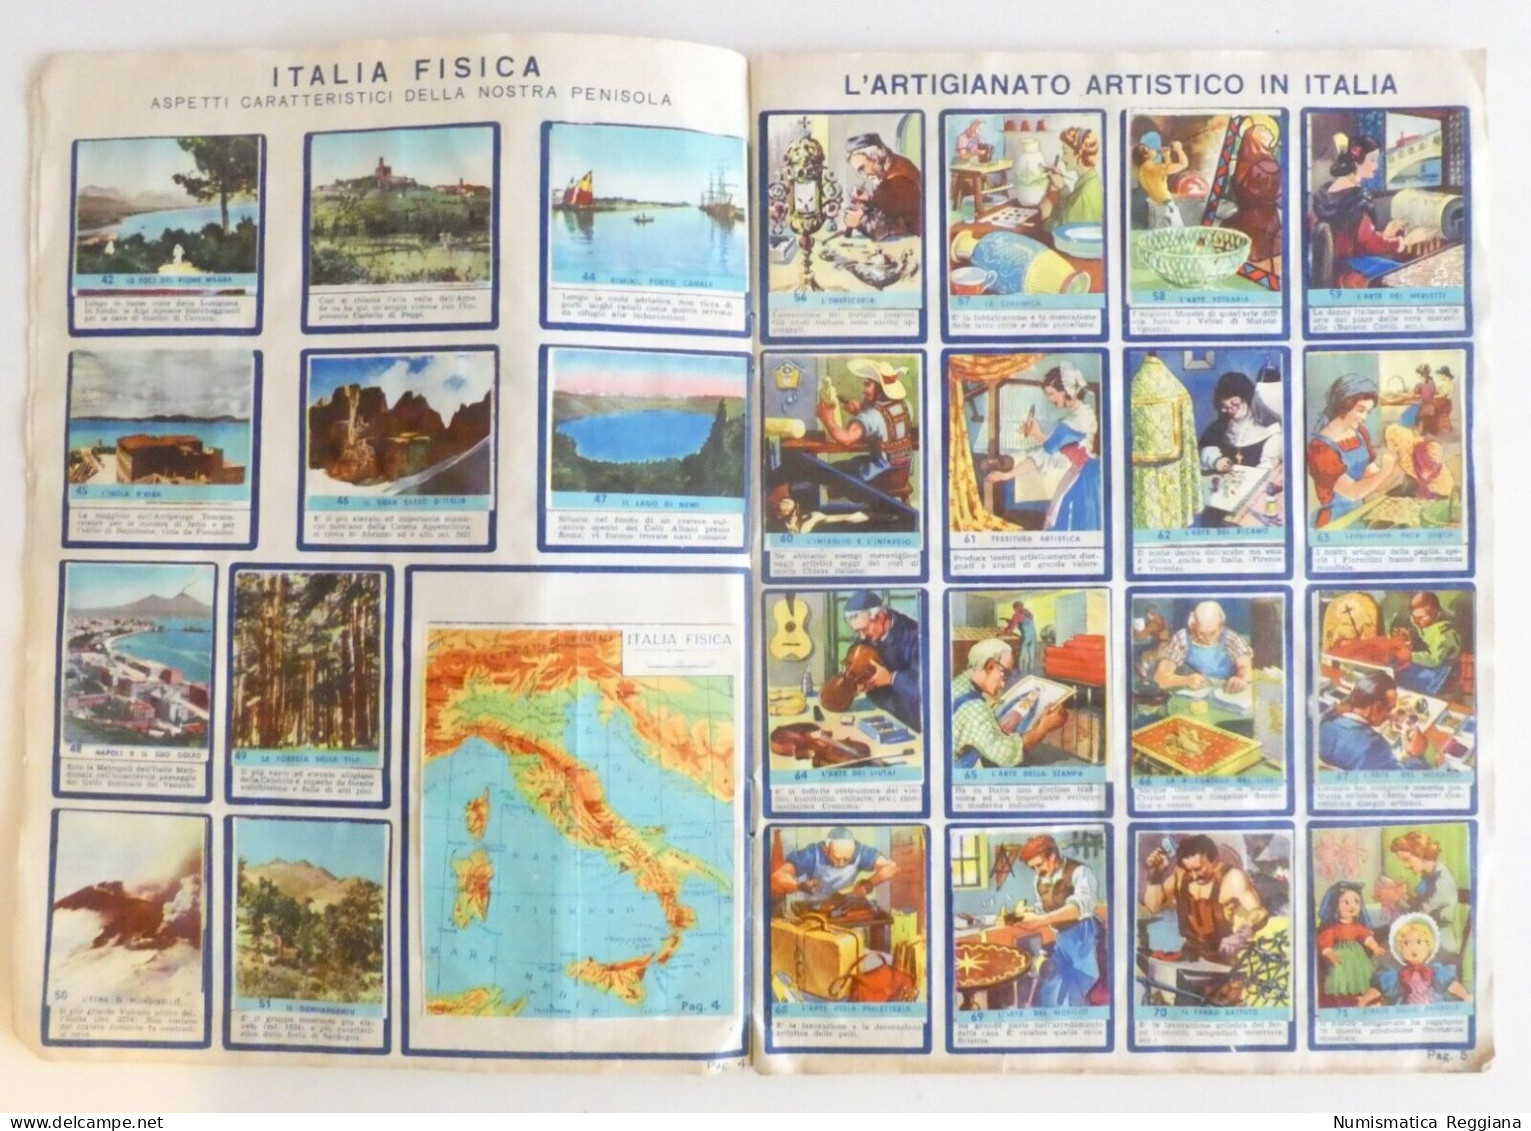 Album Figurine Le Regioni D'Italia - Edizione Lampo 1954 (10 Figurine Mancanti) - Trading-Karten